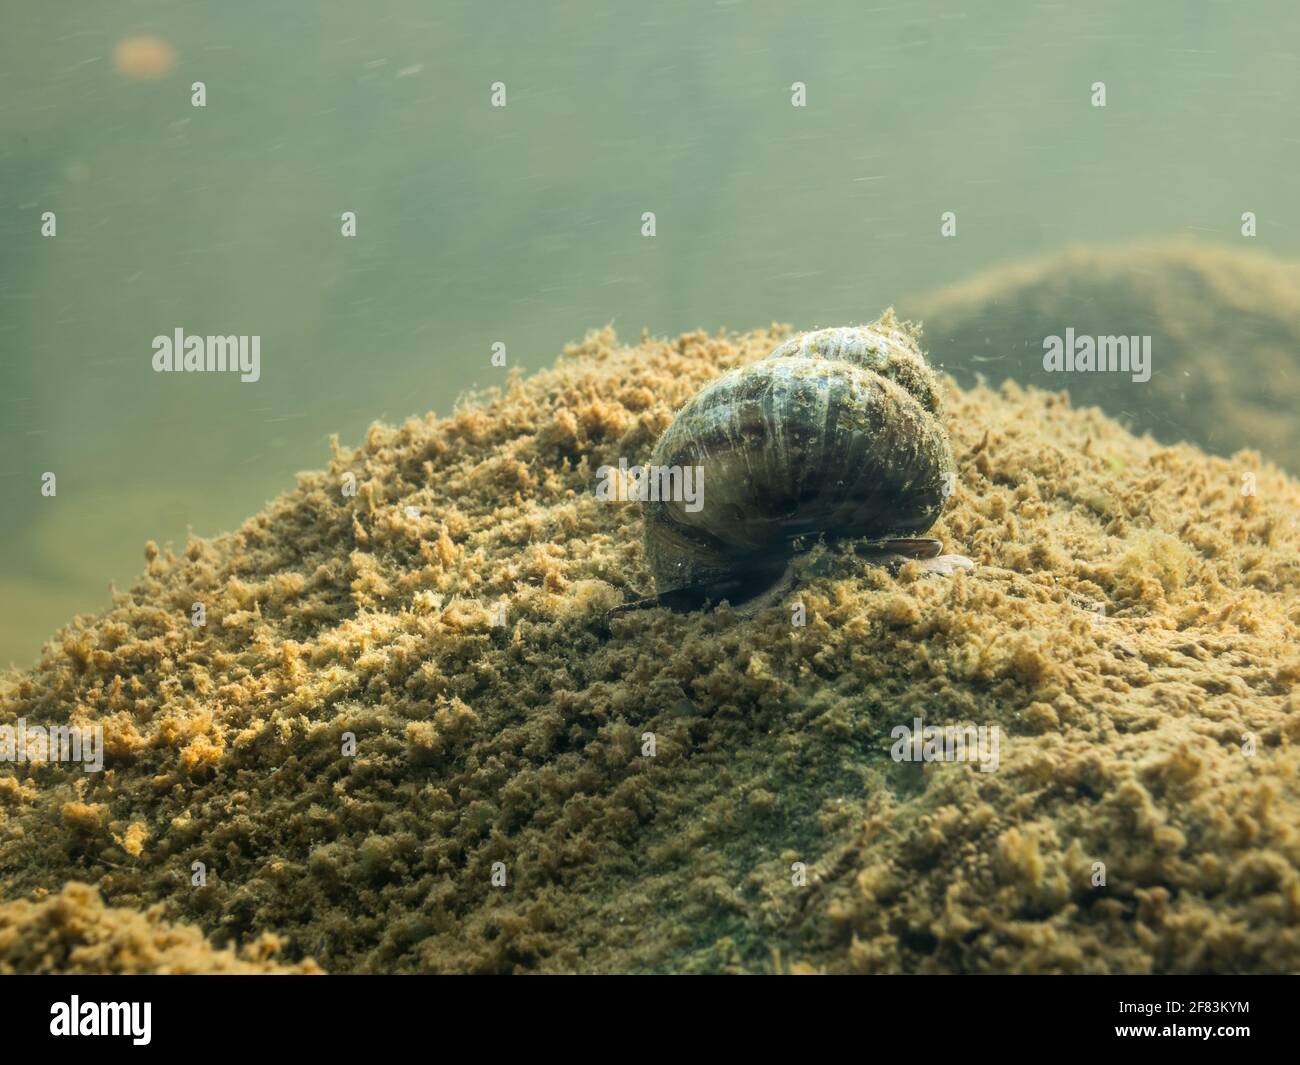 Freshwater snail crawling over stone on lake bottom Stock Photo